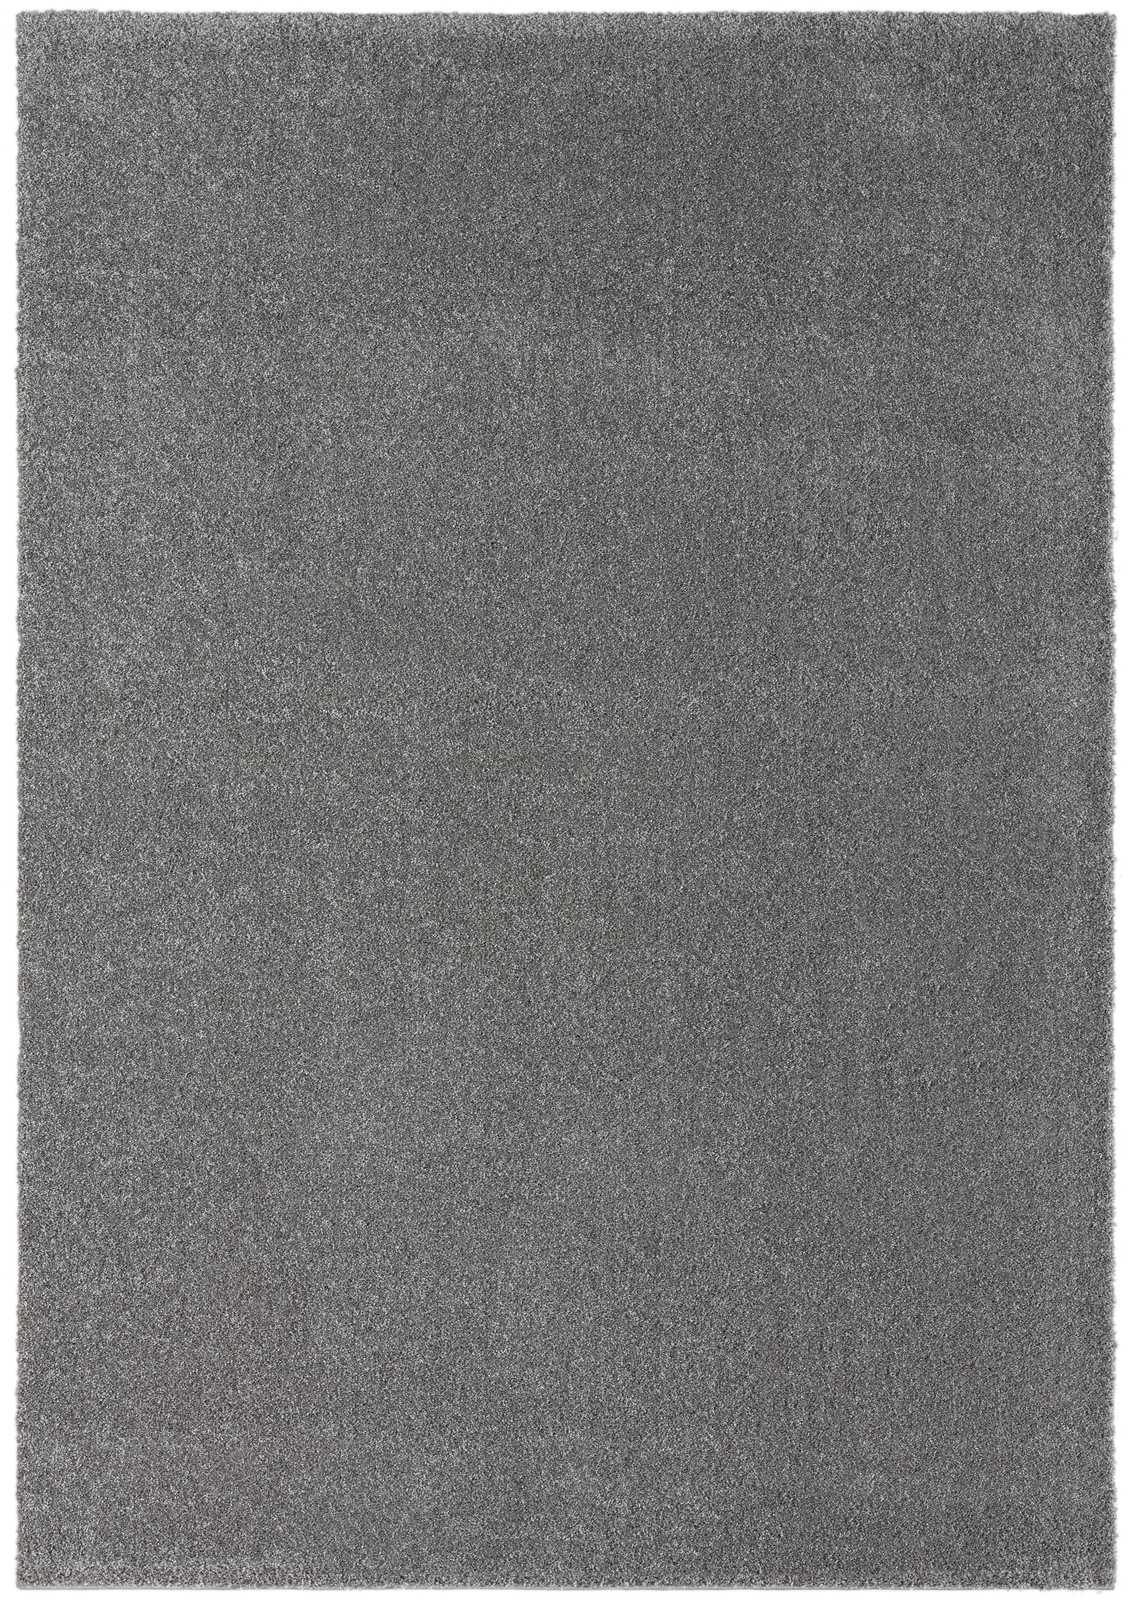             Tapis moelleux à poils courts gris - 150 x 80 cm
        